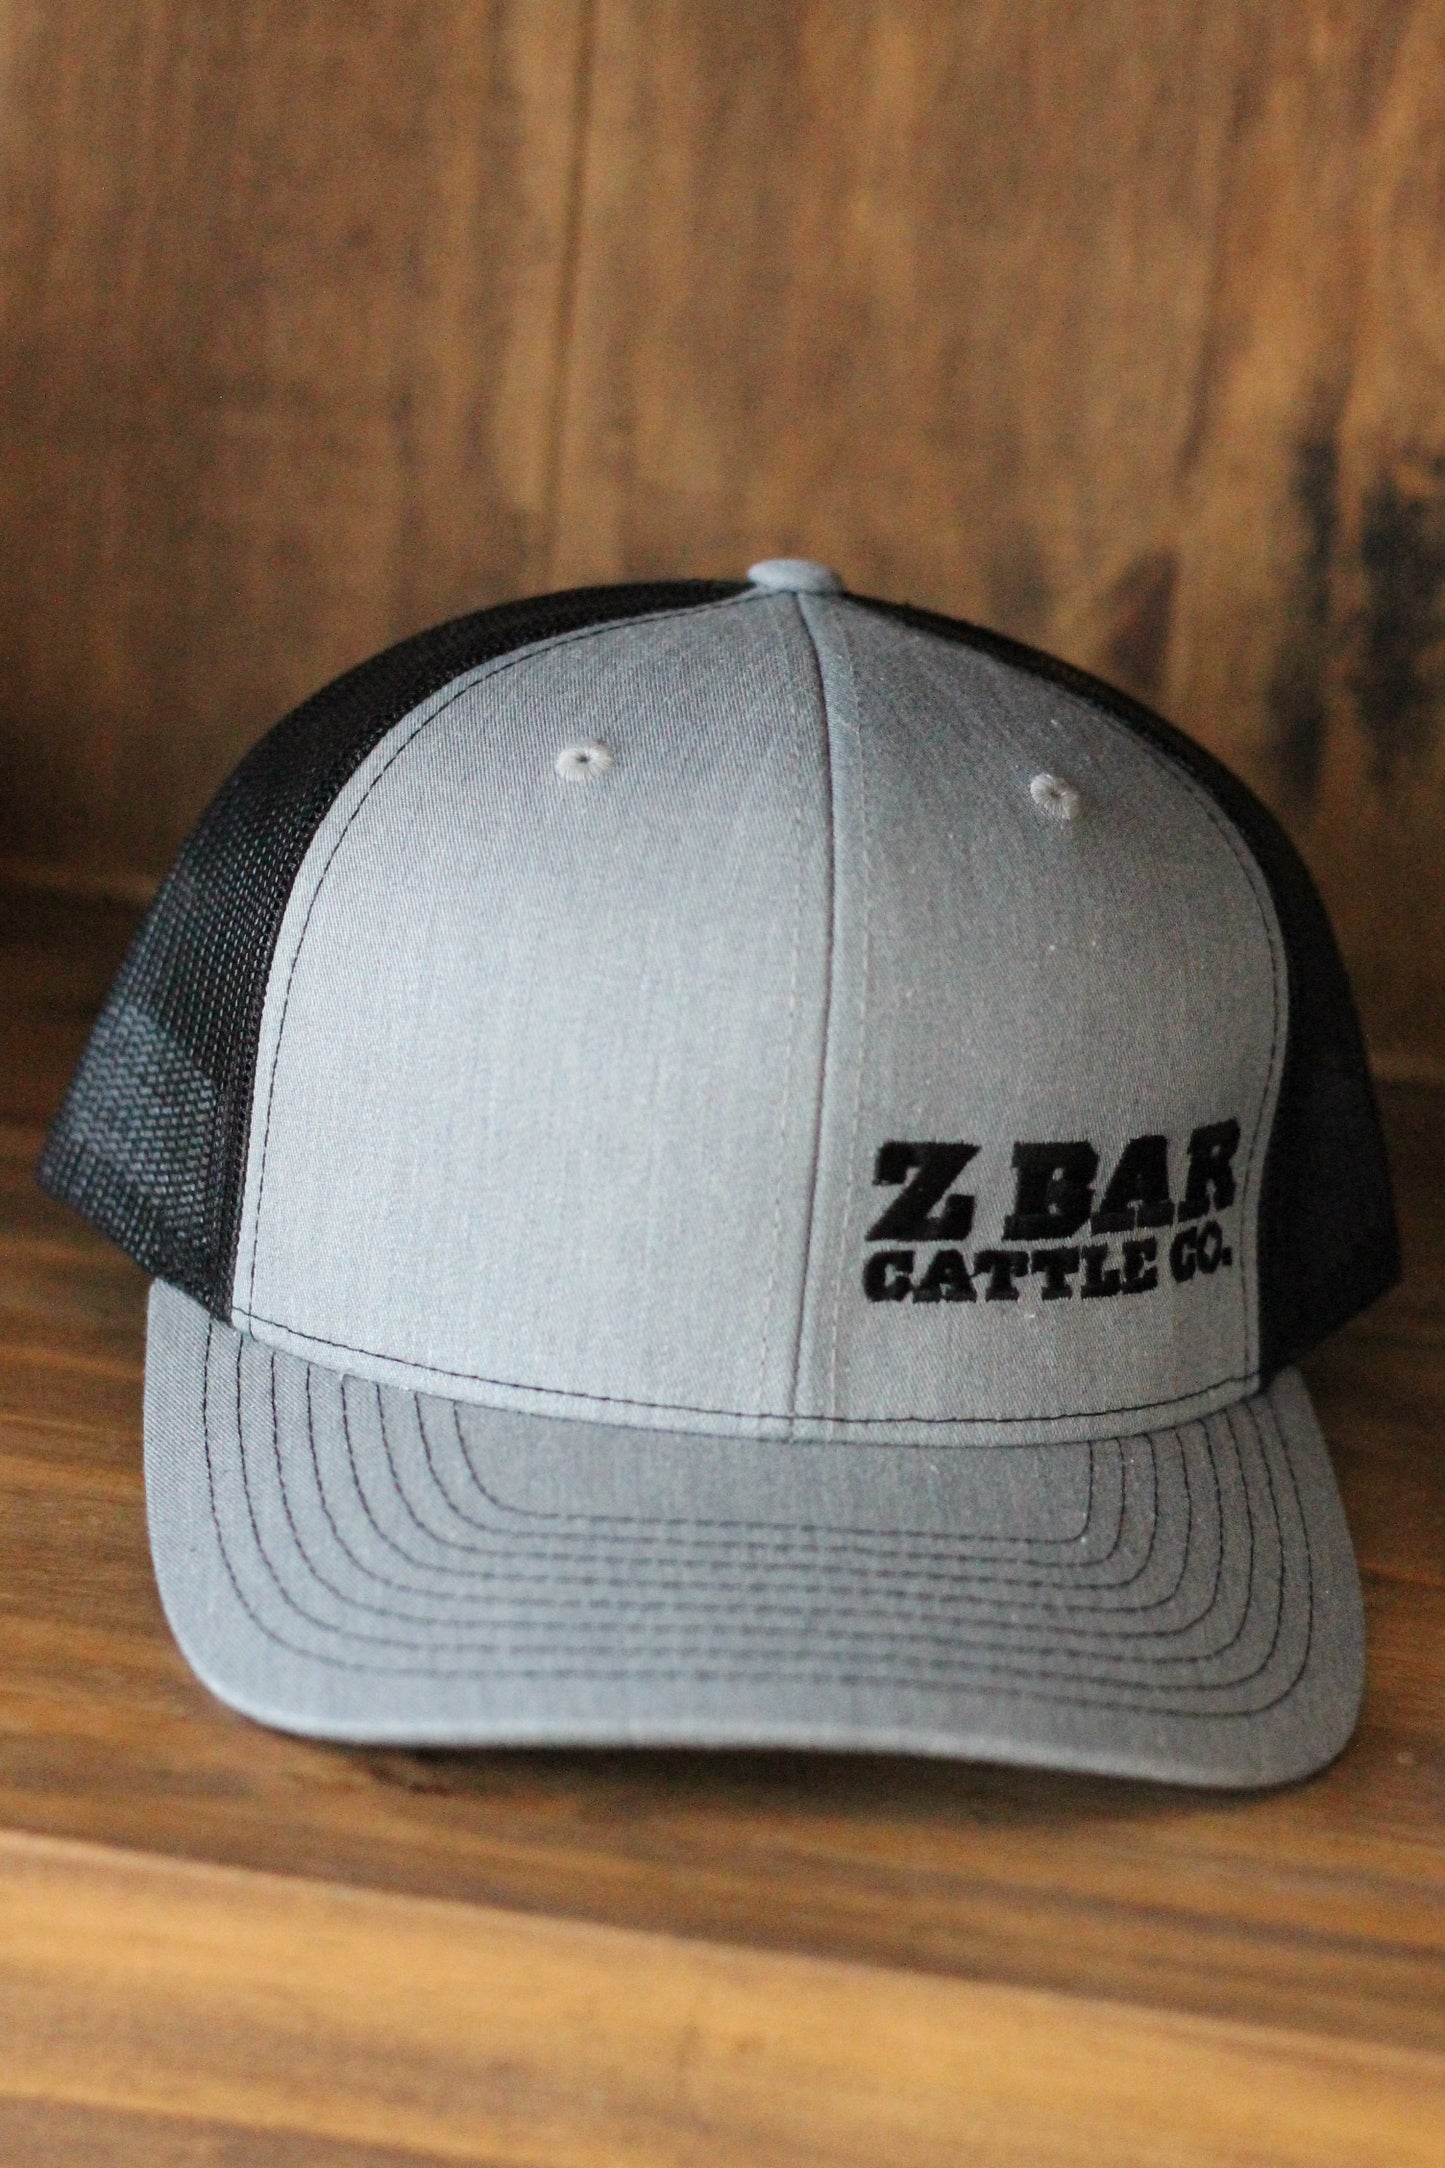 Z Bar Cattle Co Grey/Black Hat